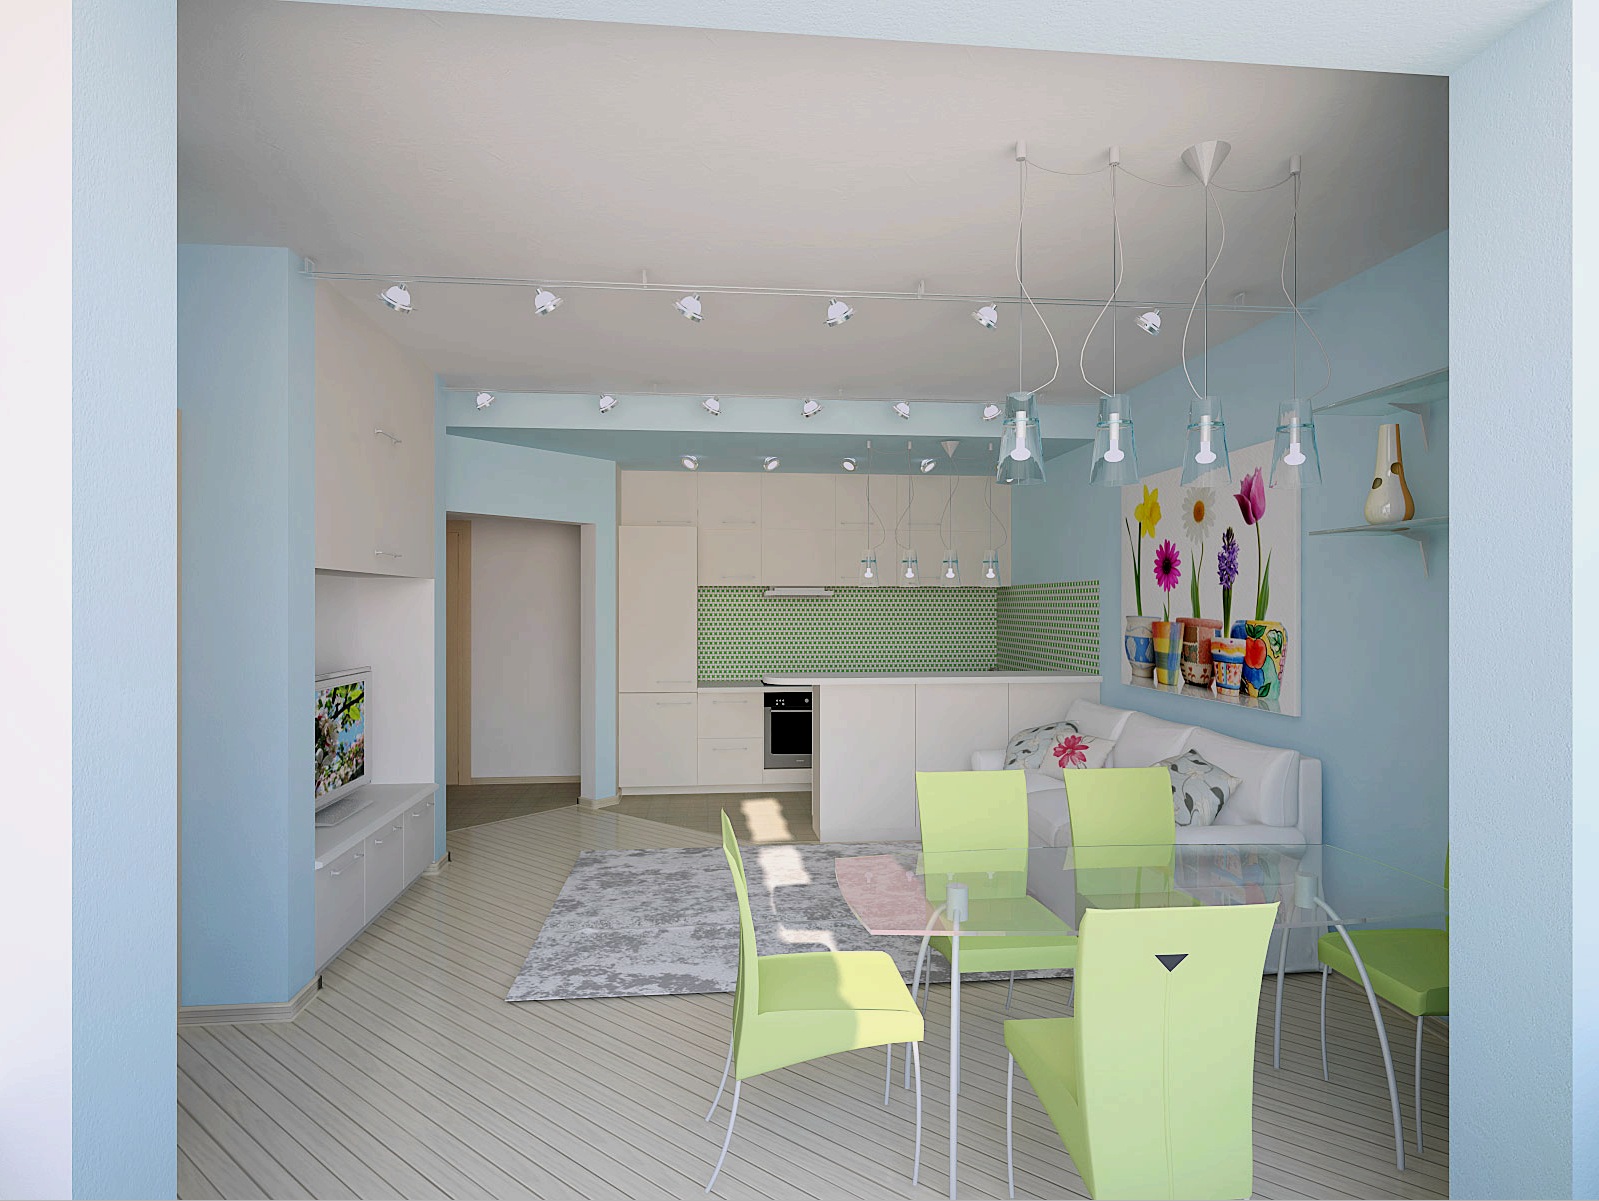 Interior de la sala de estar de la cocina (45 fotos): zonificación, iluminación y elección de colores.